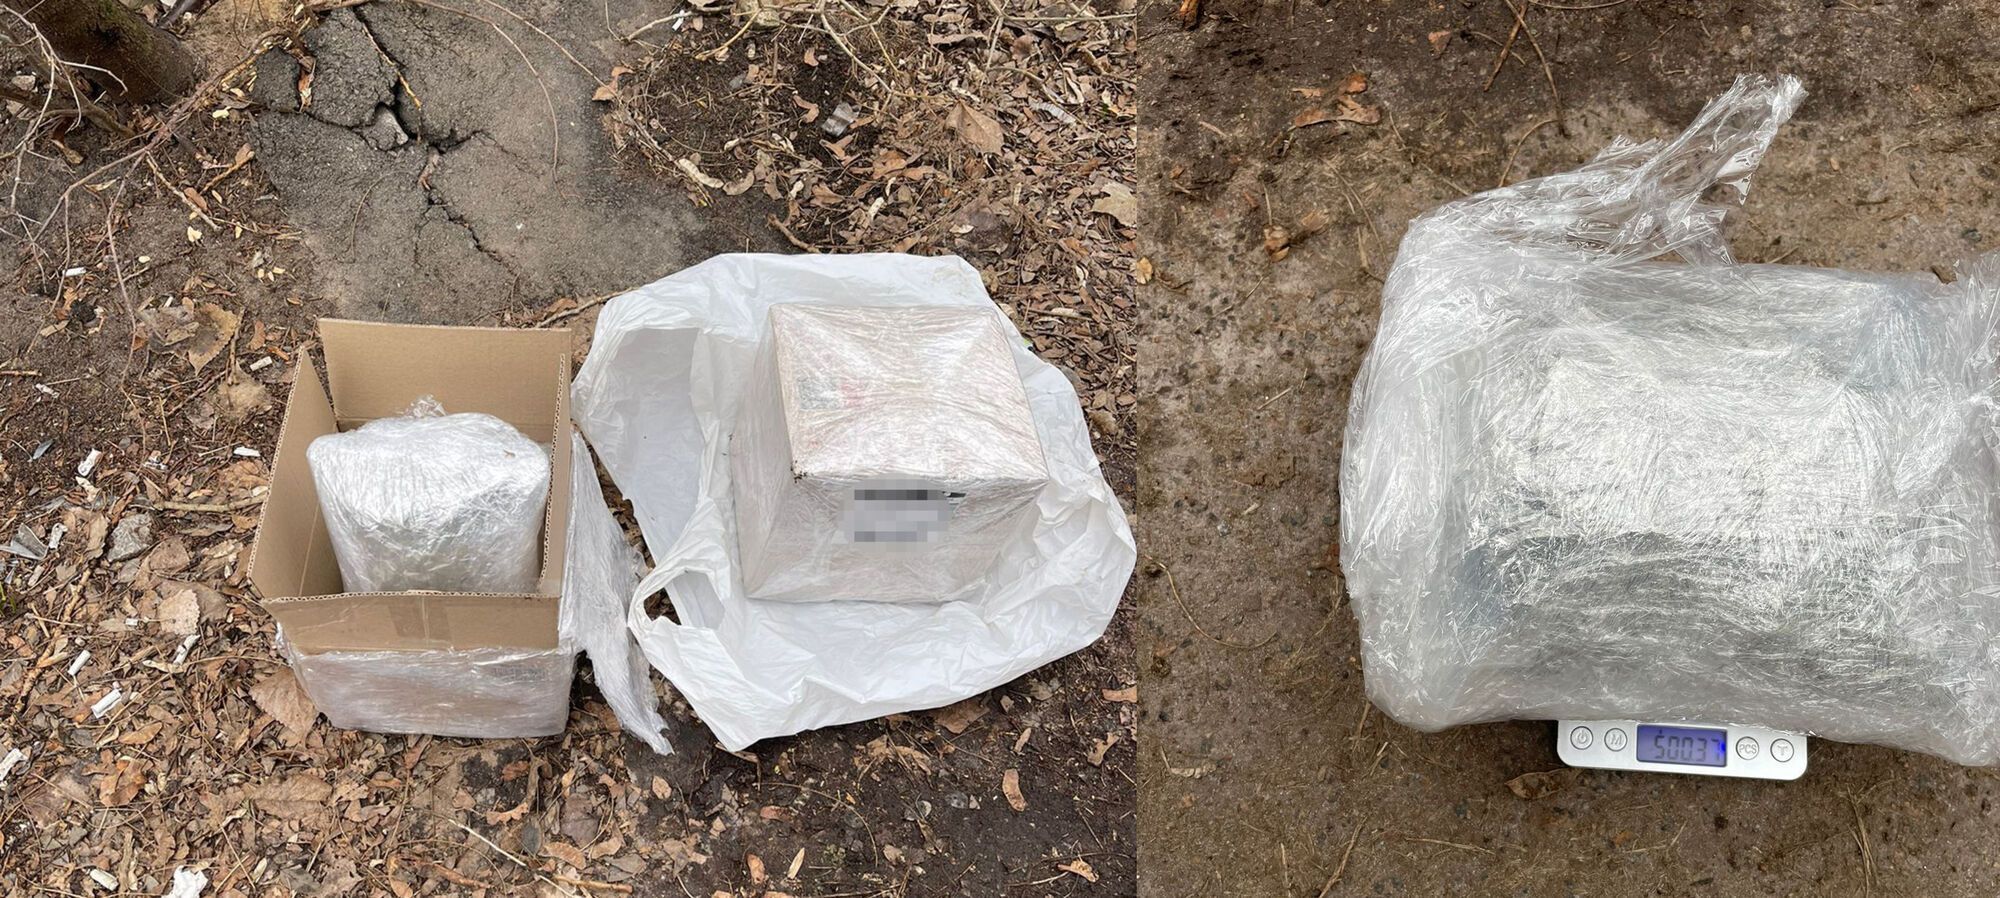 В Киеве задержан мужчина, который с помощью почты распространял наркотики: у него нашли 2 кг "товара". Фото